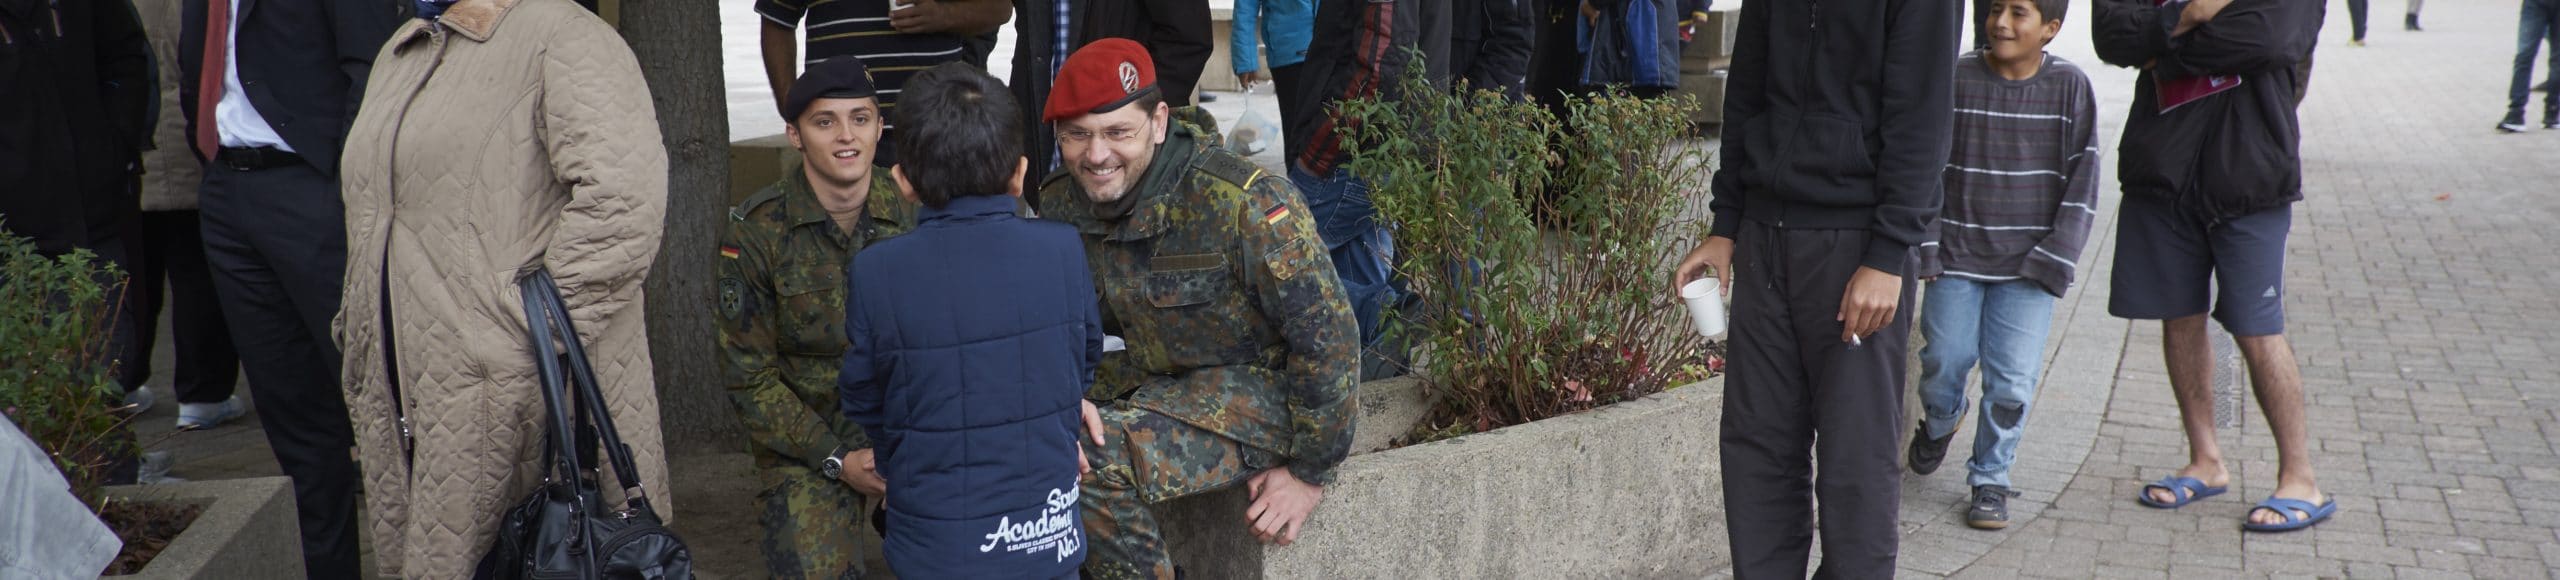 Integration Bundeswehr Flüchtlinge